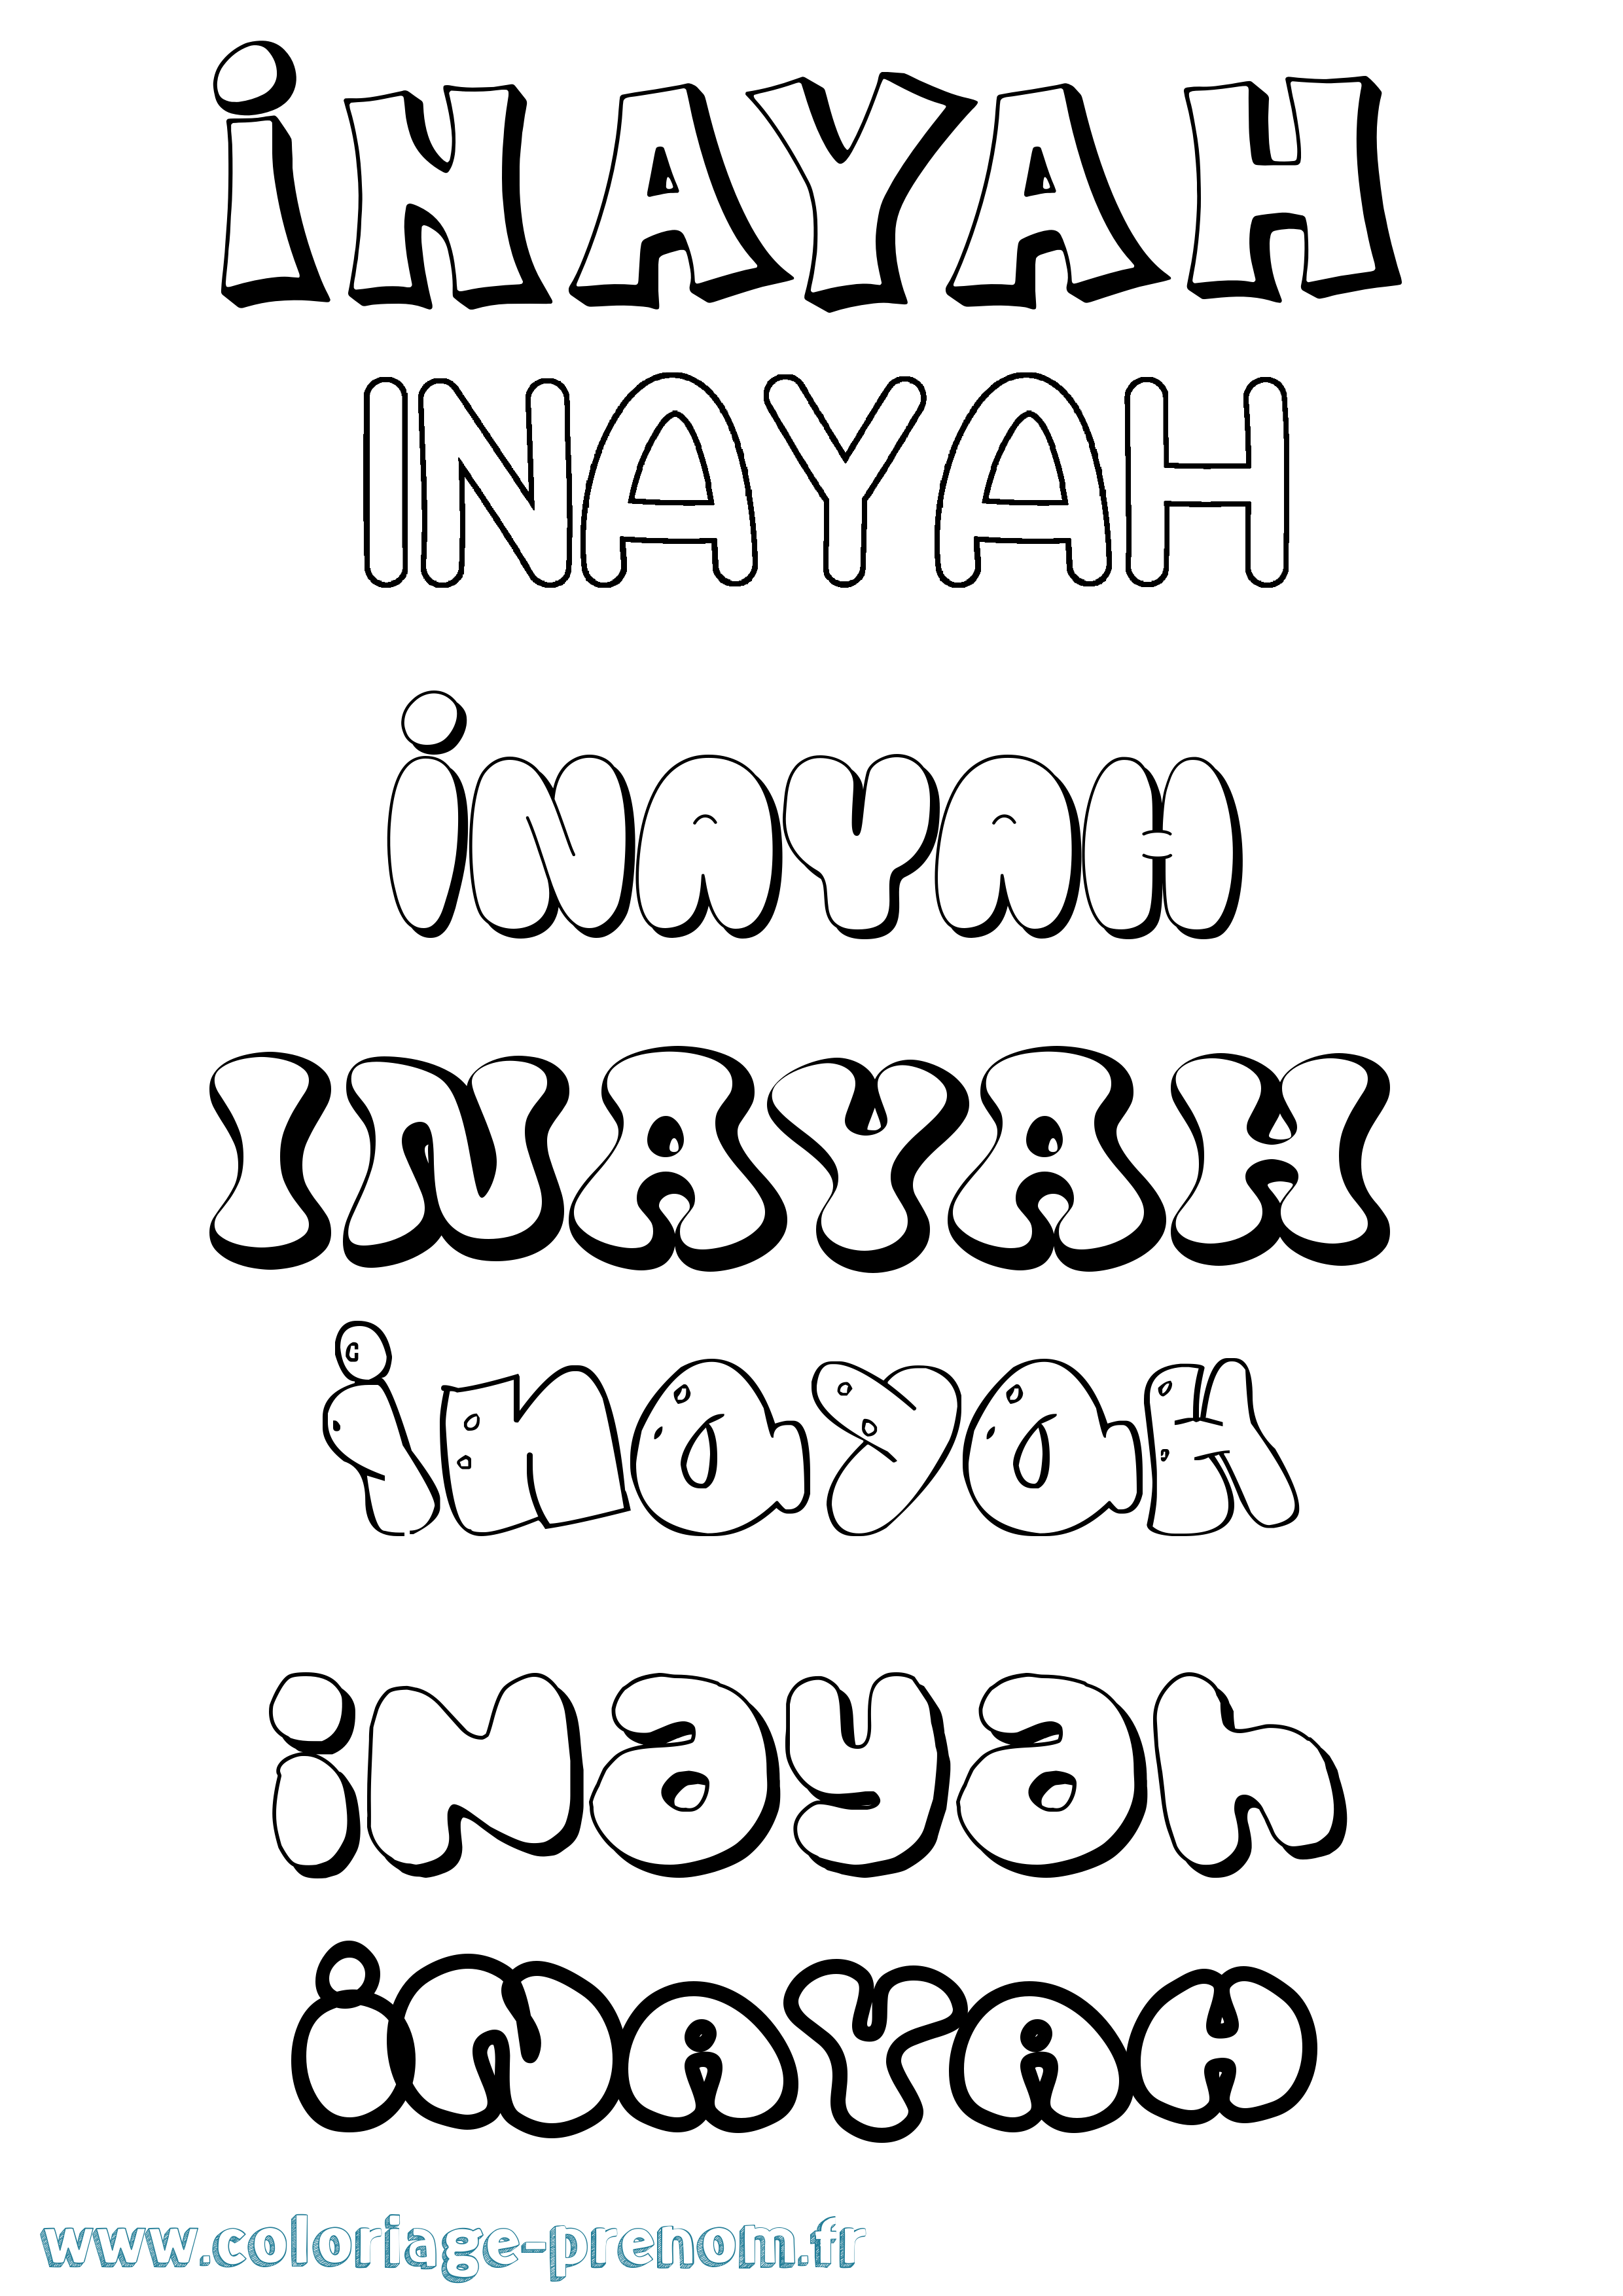 Coloriage prénom Inayah Bubble